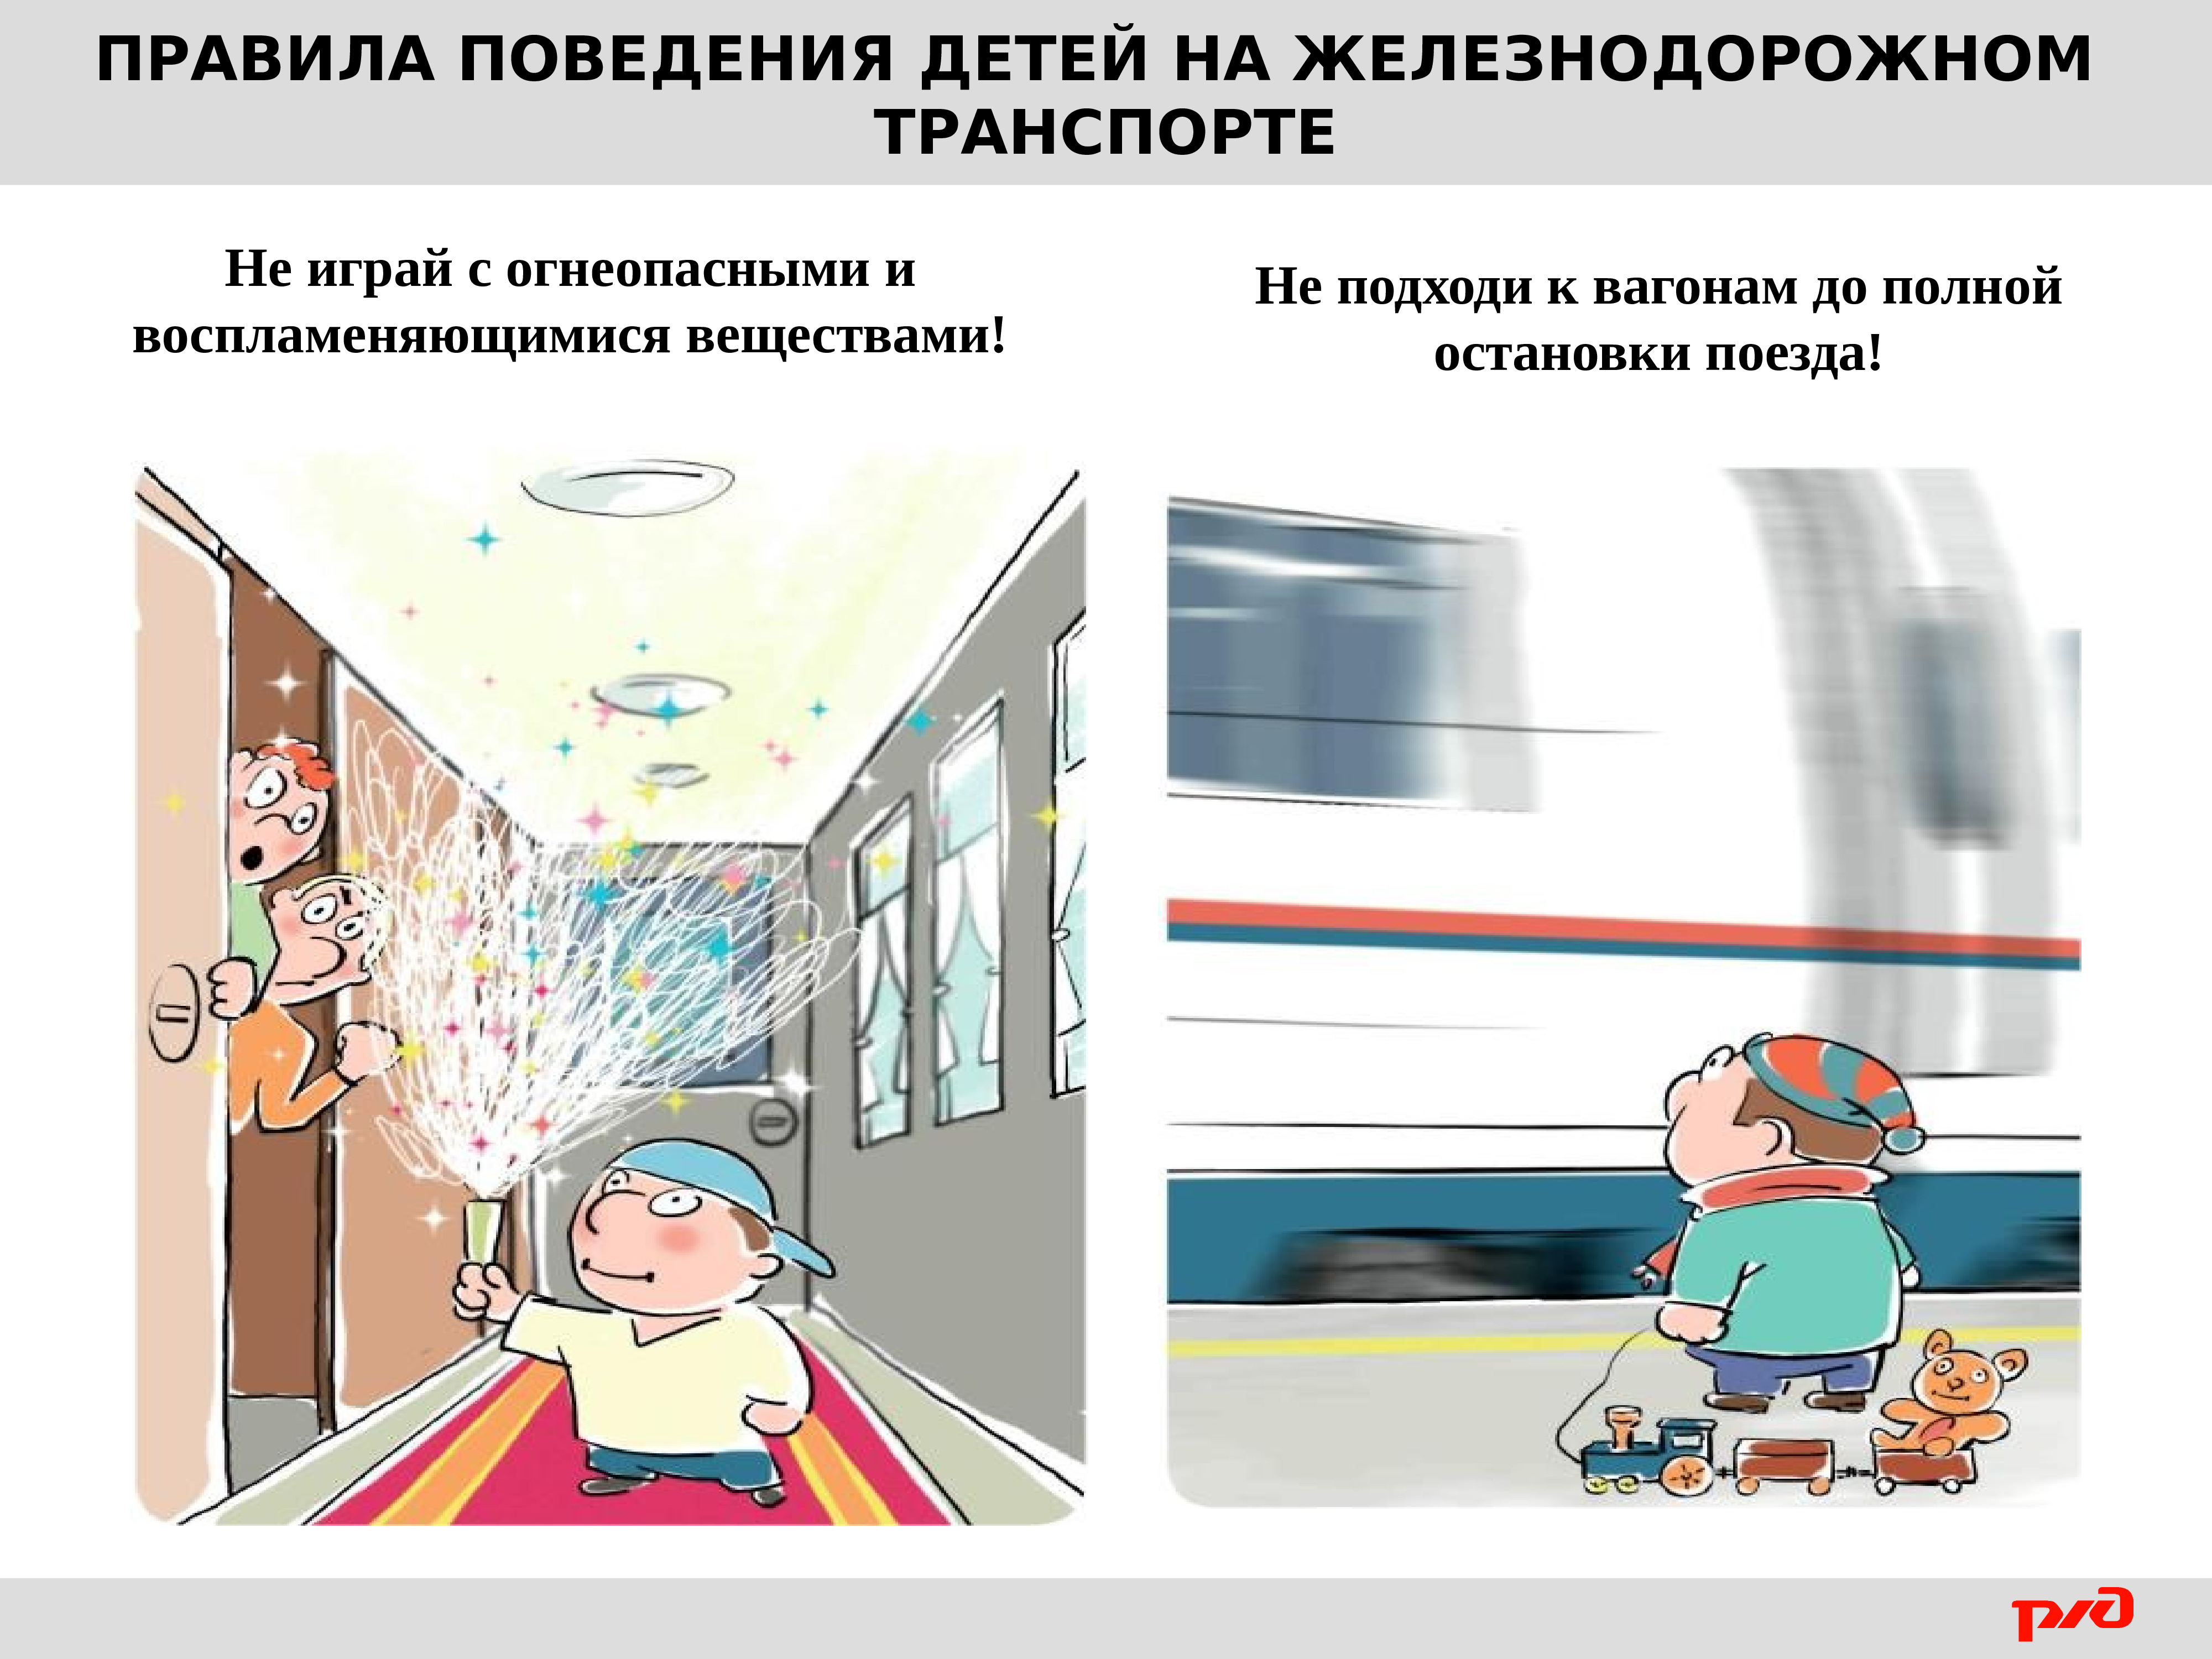 Правила безопасности в поезде для детей